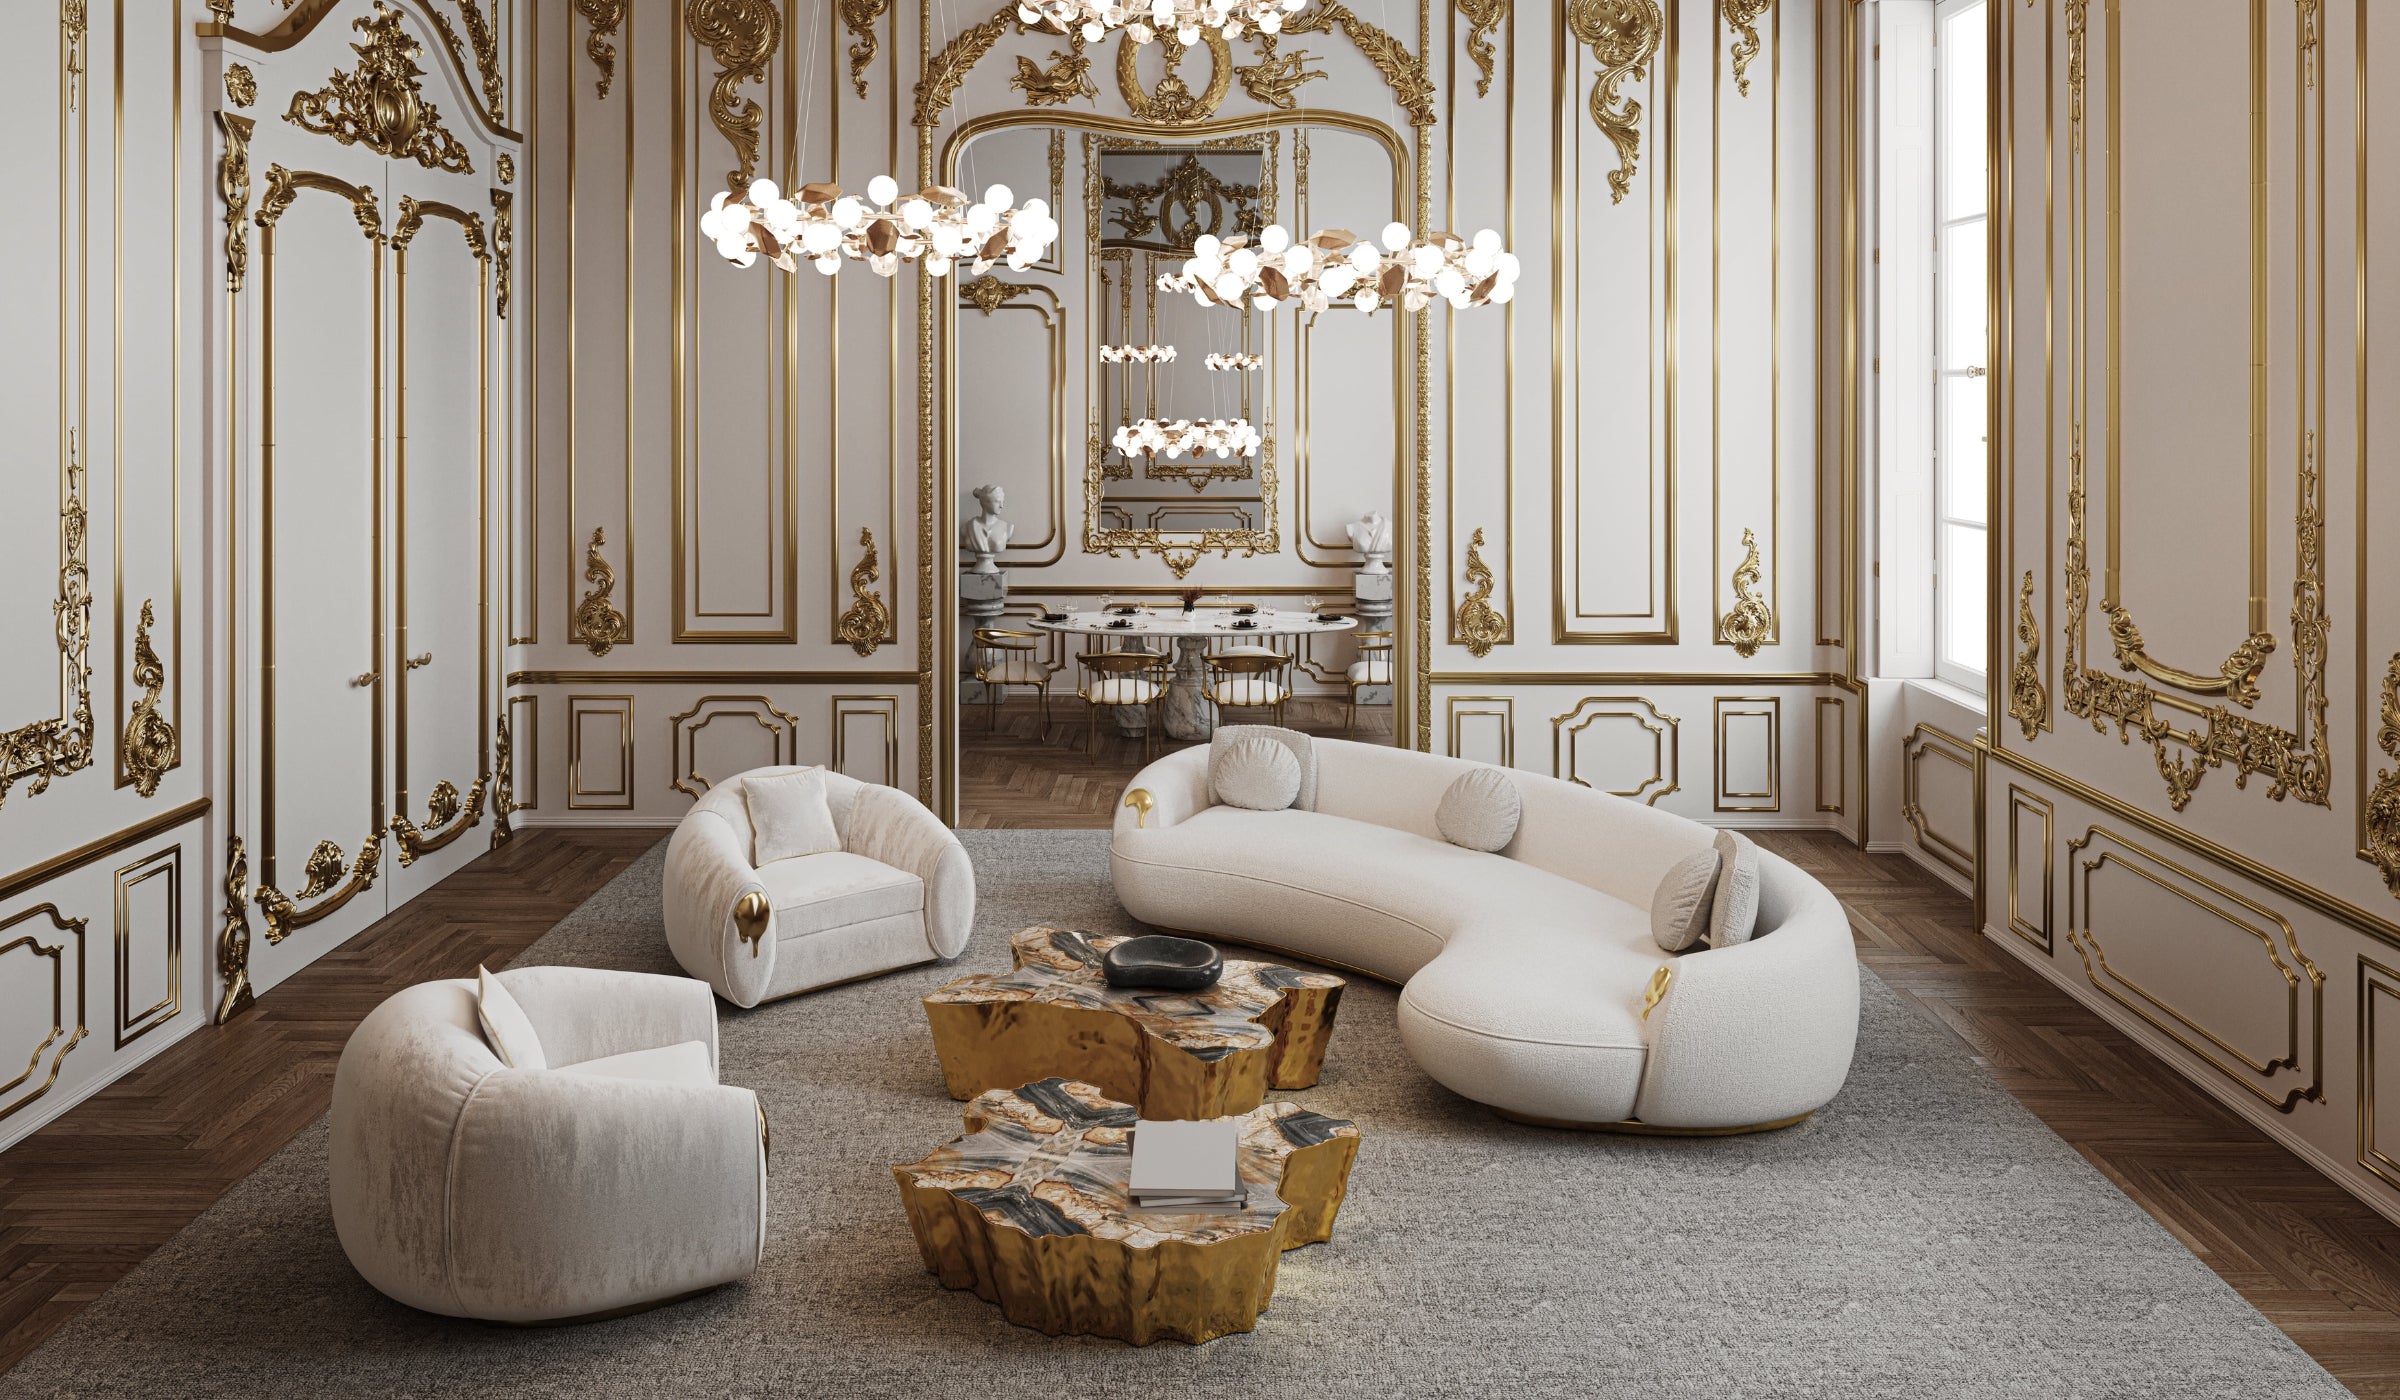 Soleil - Luxury curved sofa in brass and premium cream fabric